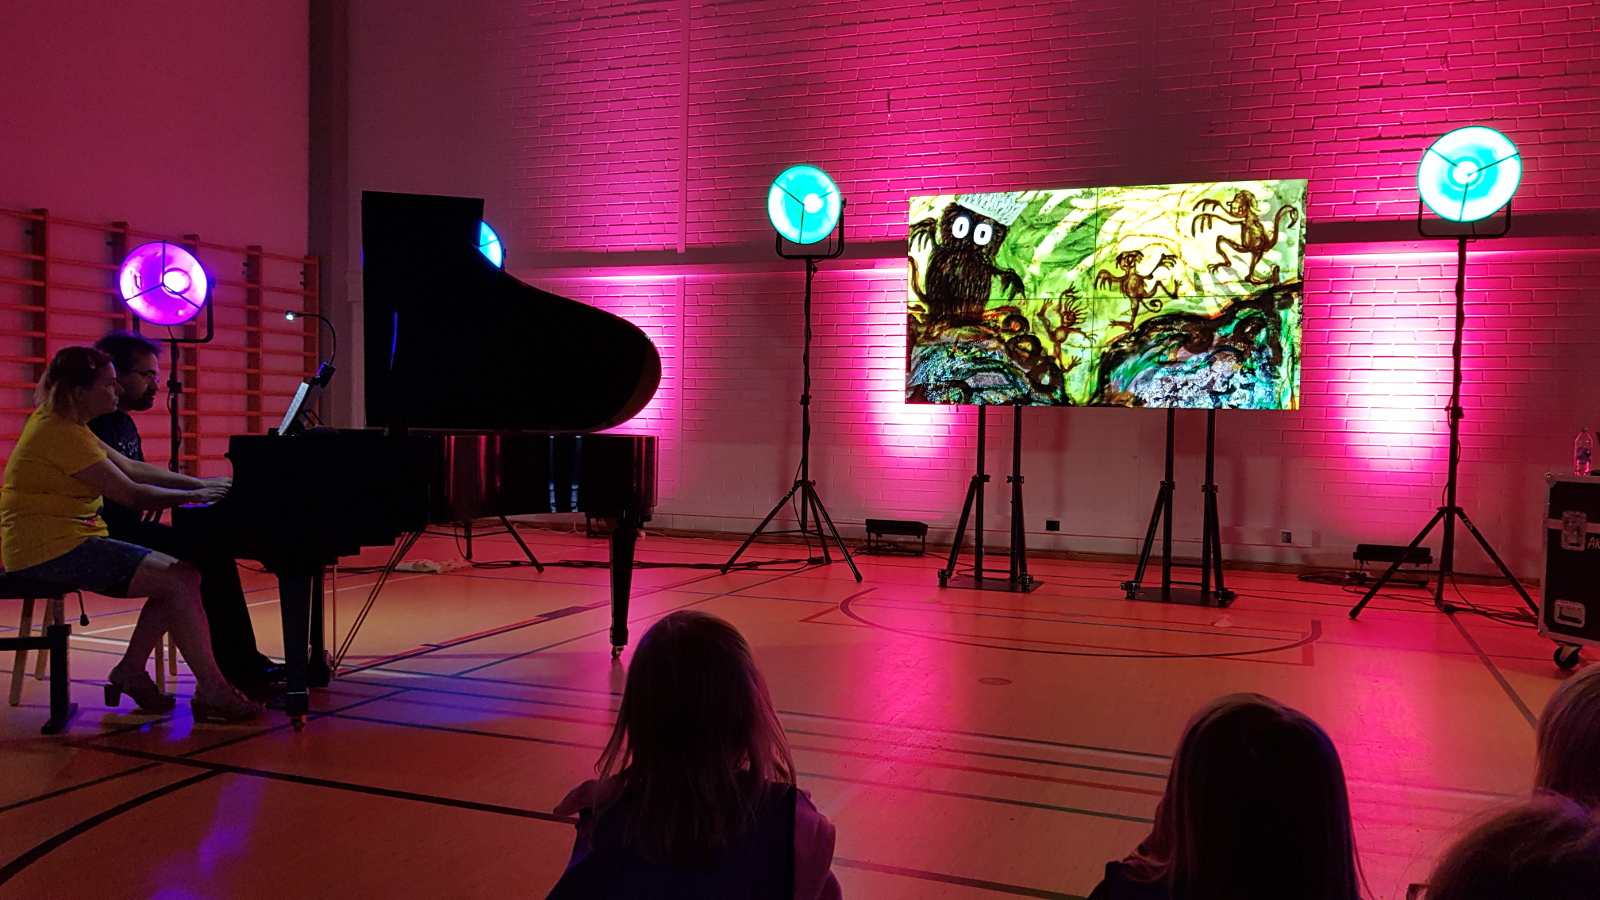 Kuvassa on tummassa salissa vasemmalla flyygeli ja sitä soittamassa Liisa Malmivaara ja Tuomas Turriago. Keskellä värivalojen keskellä on näyttö, jossa on punertavalla pohjalla iso kuningashahmo ja vieressä peikkoja.